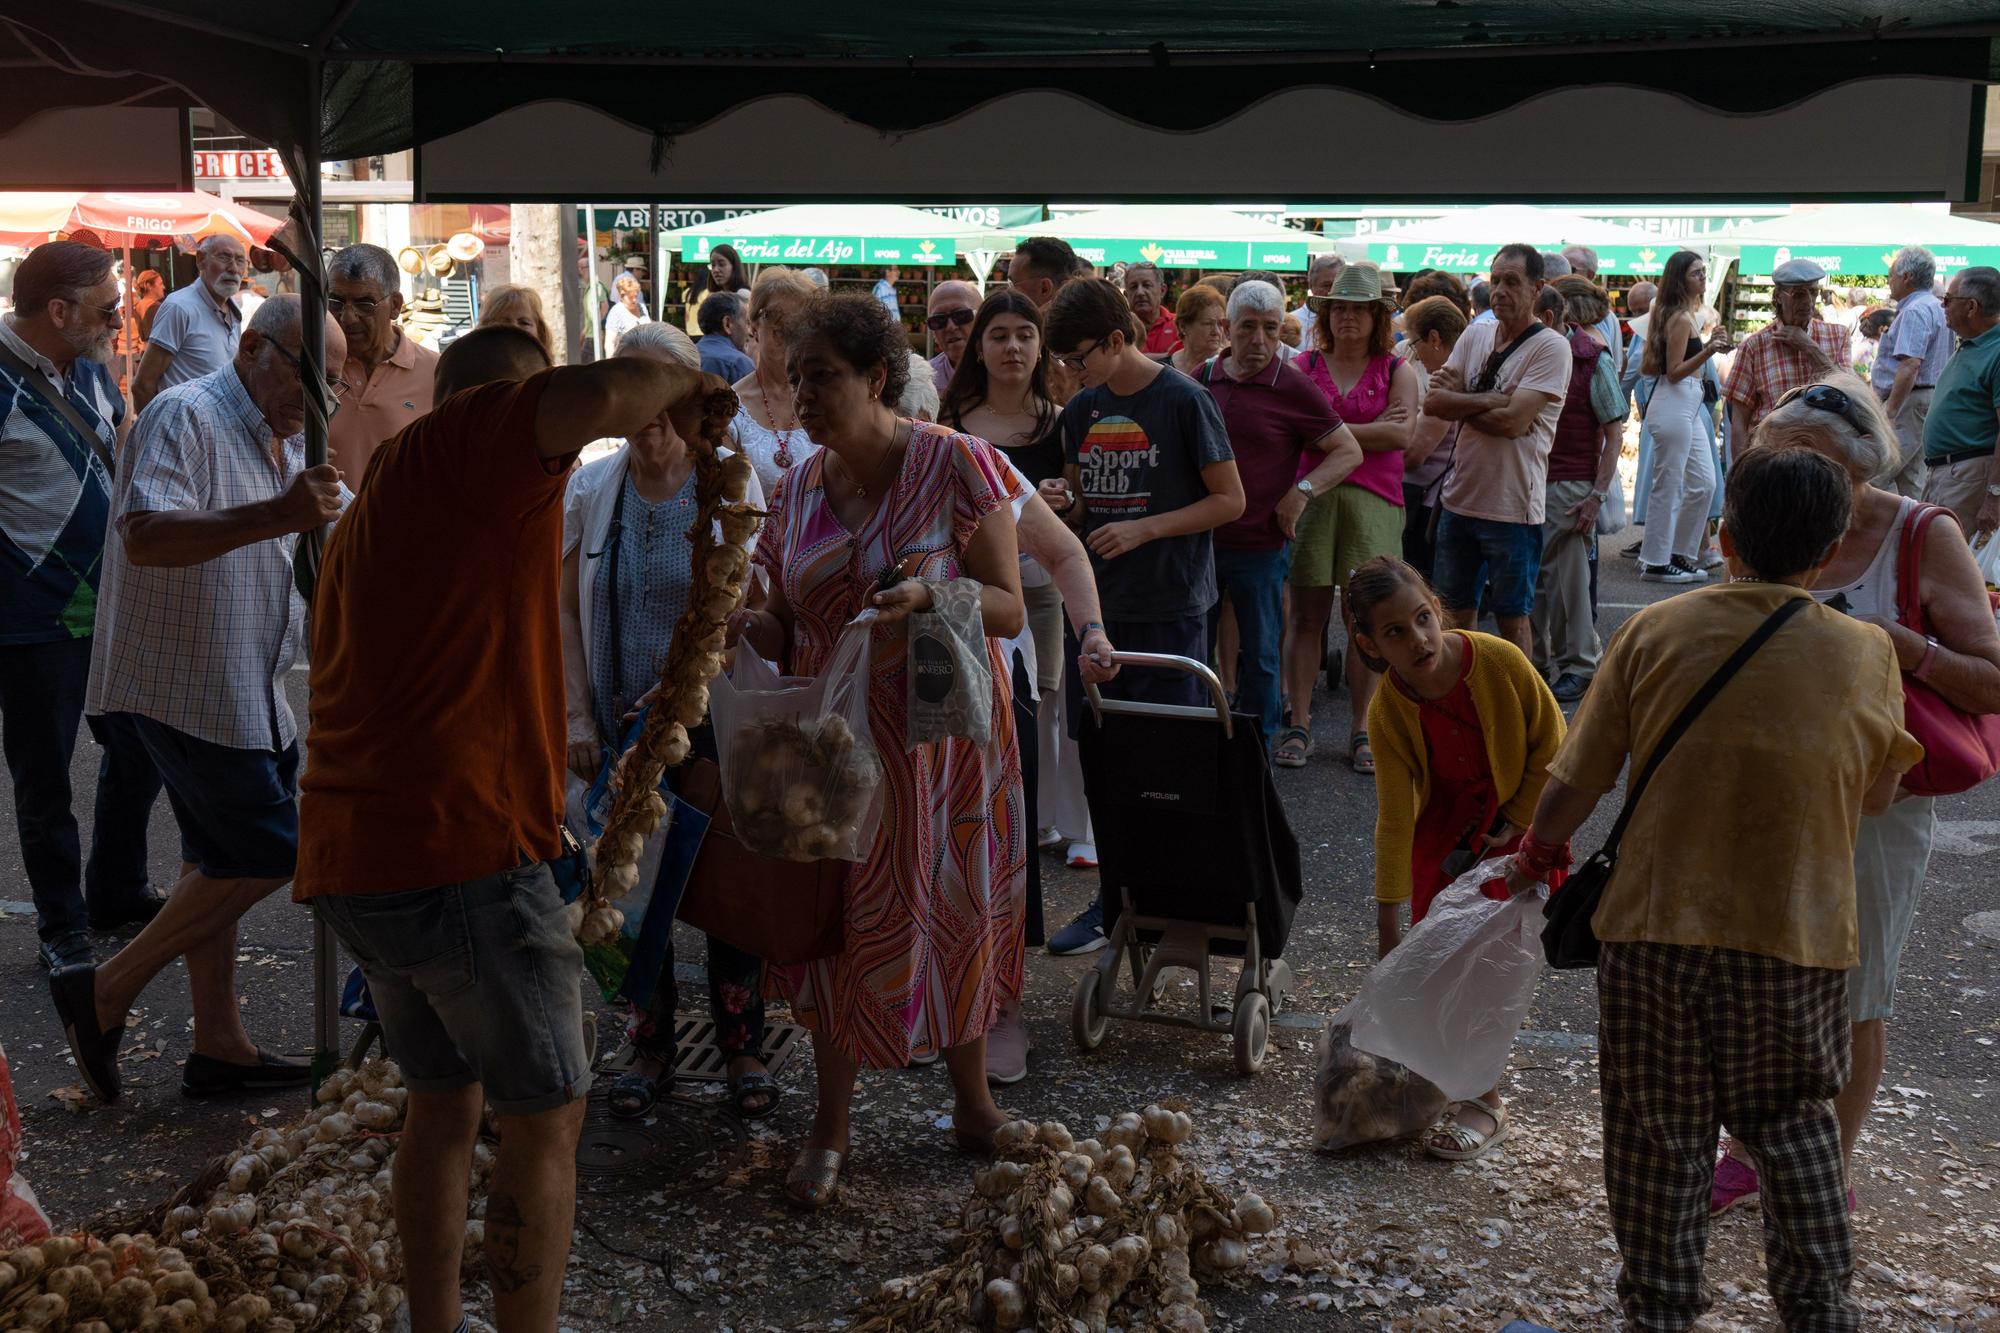 GALERÍA | La Feria del Ajo de Zamora, en imágenes